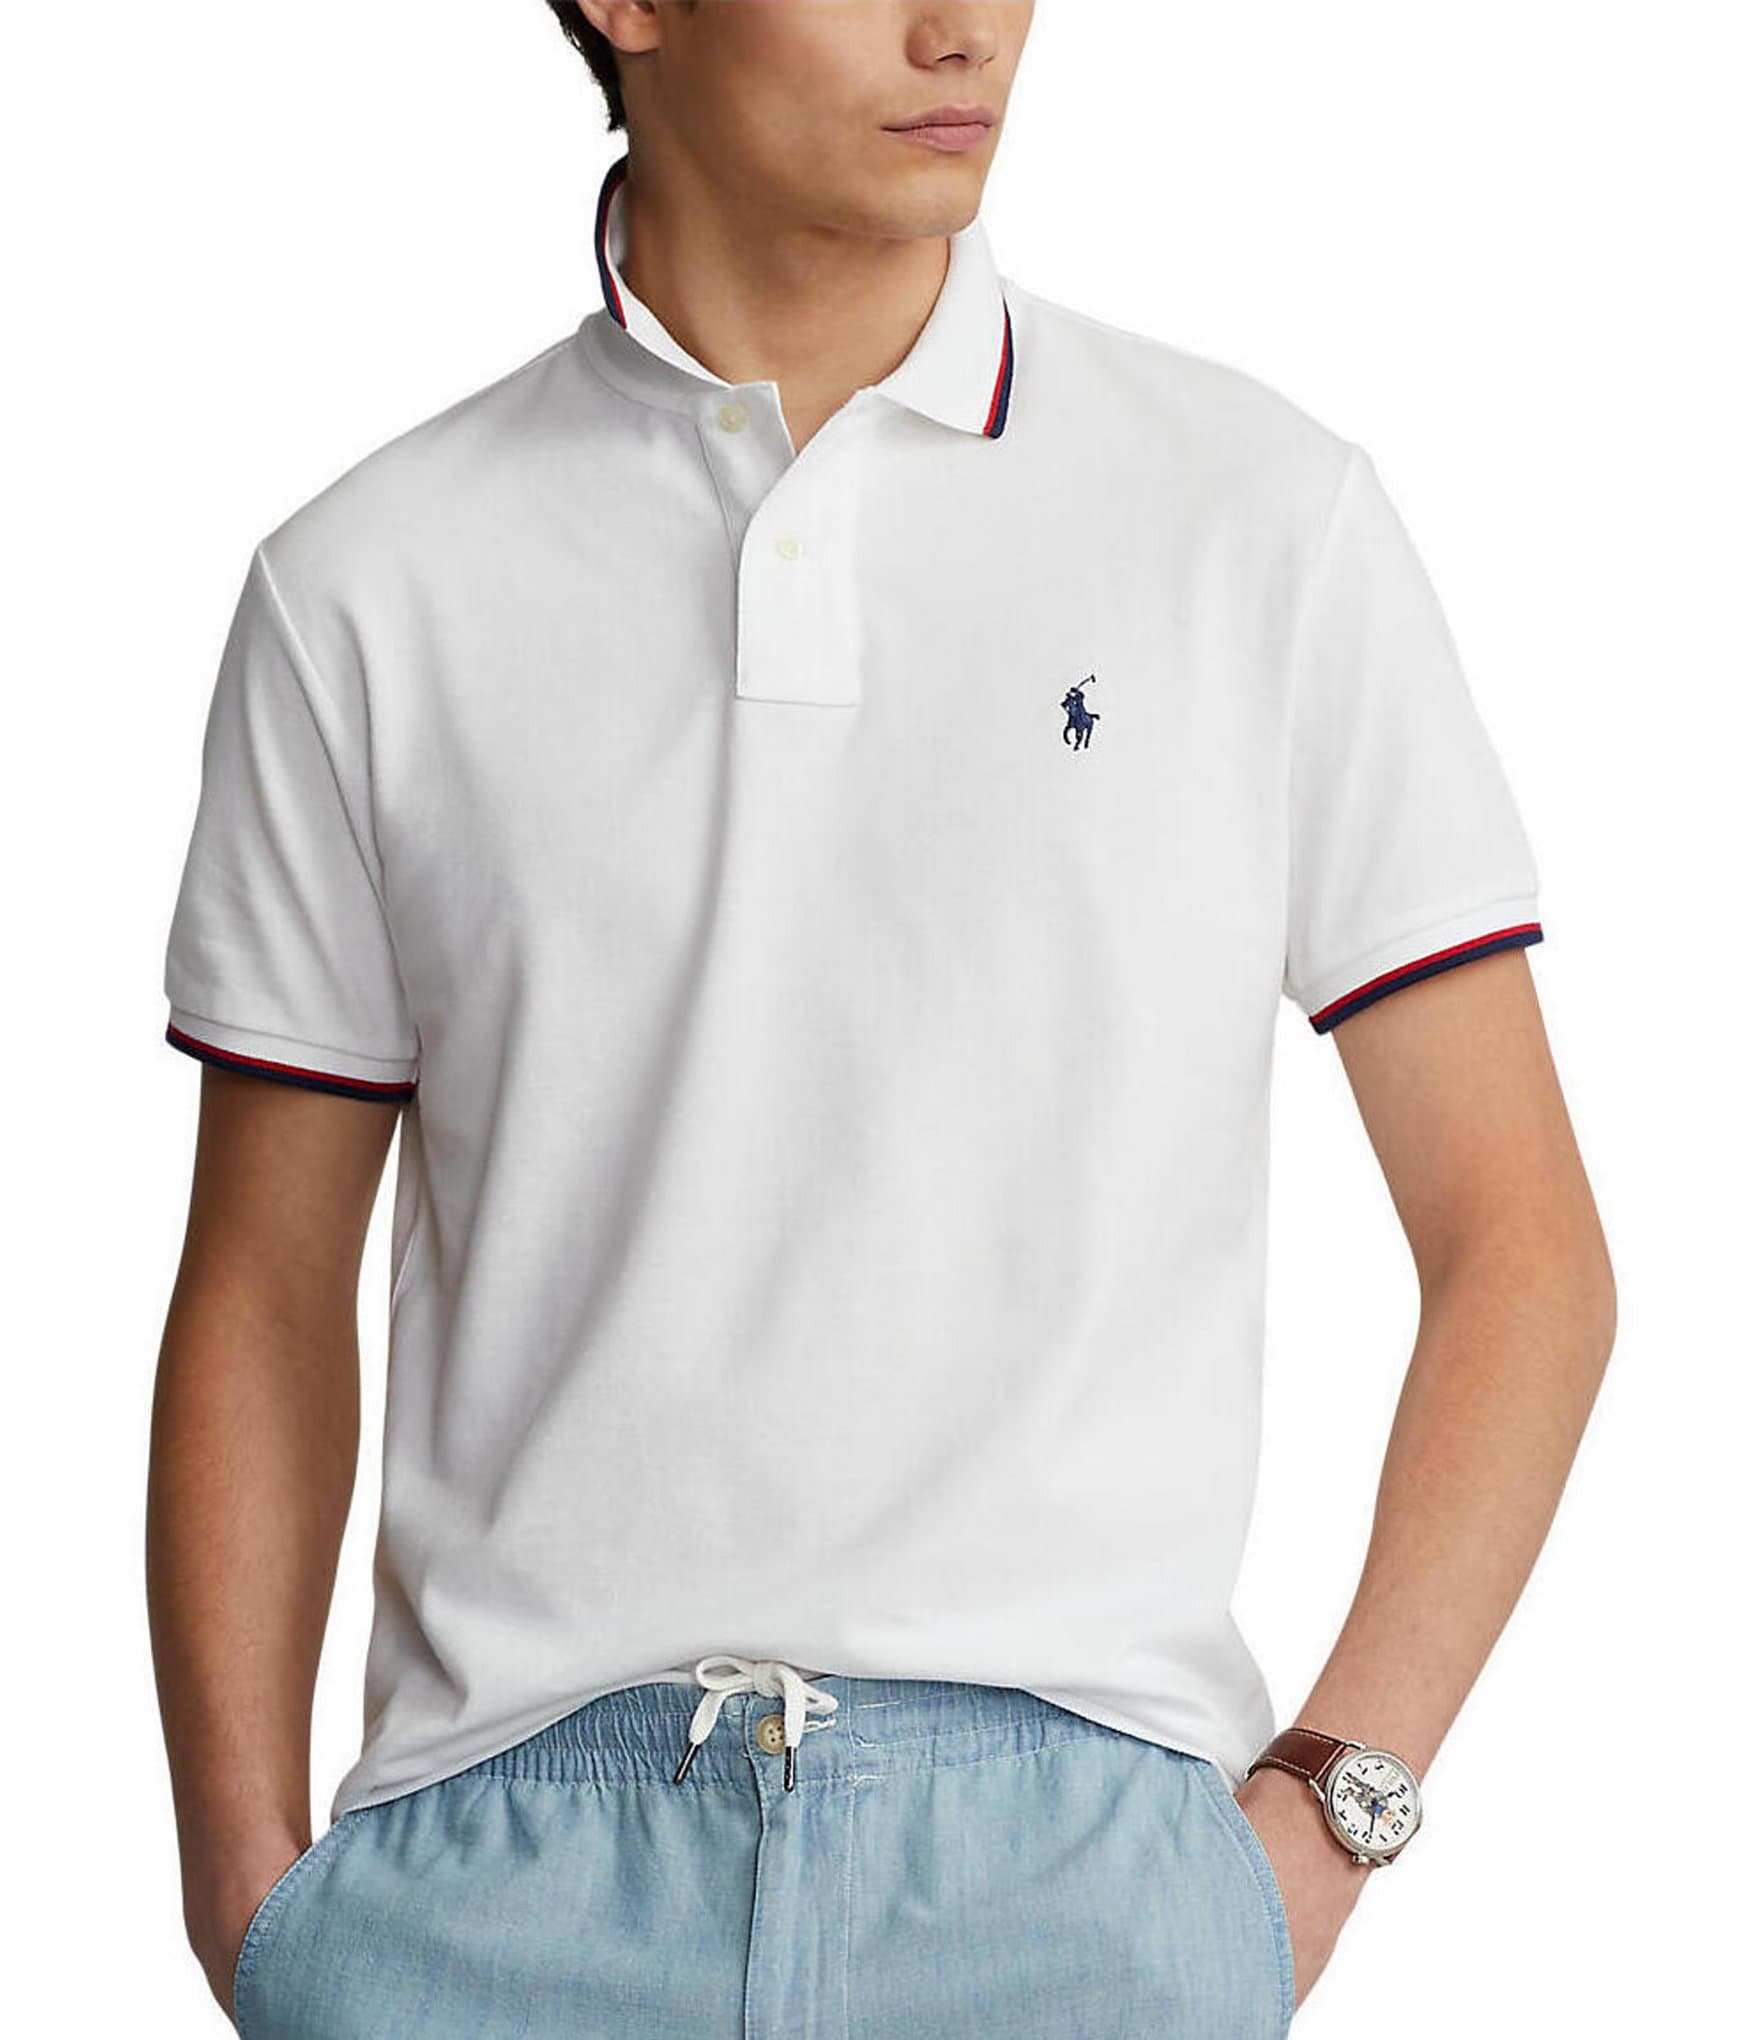 Polo Ralph Lauren - Boys White Earth Logo Polo Shirt